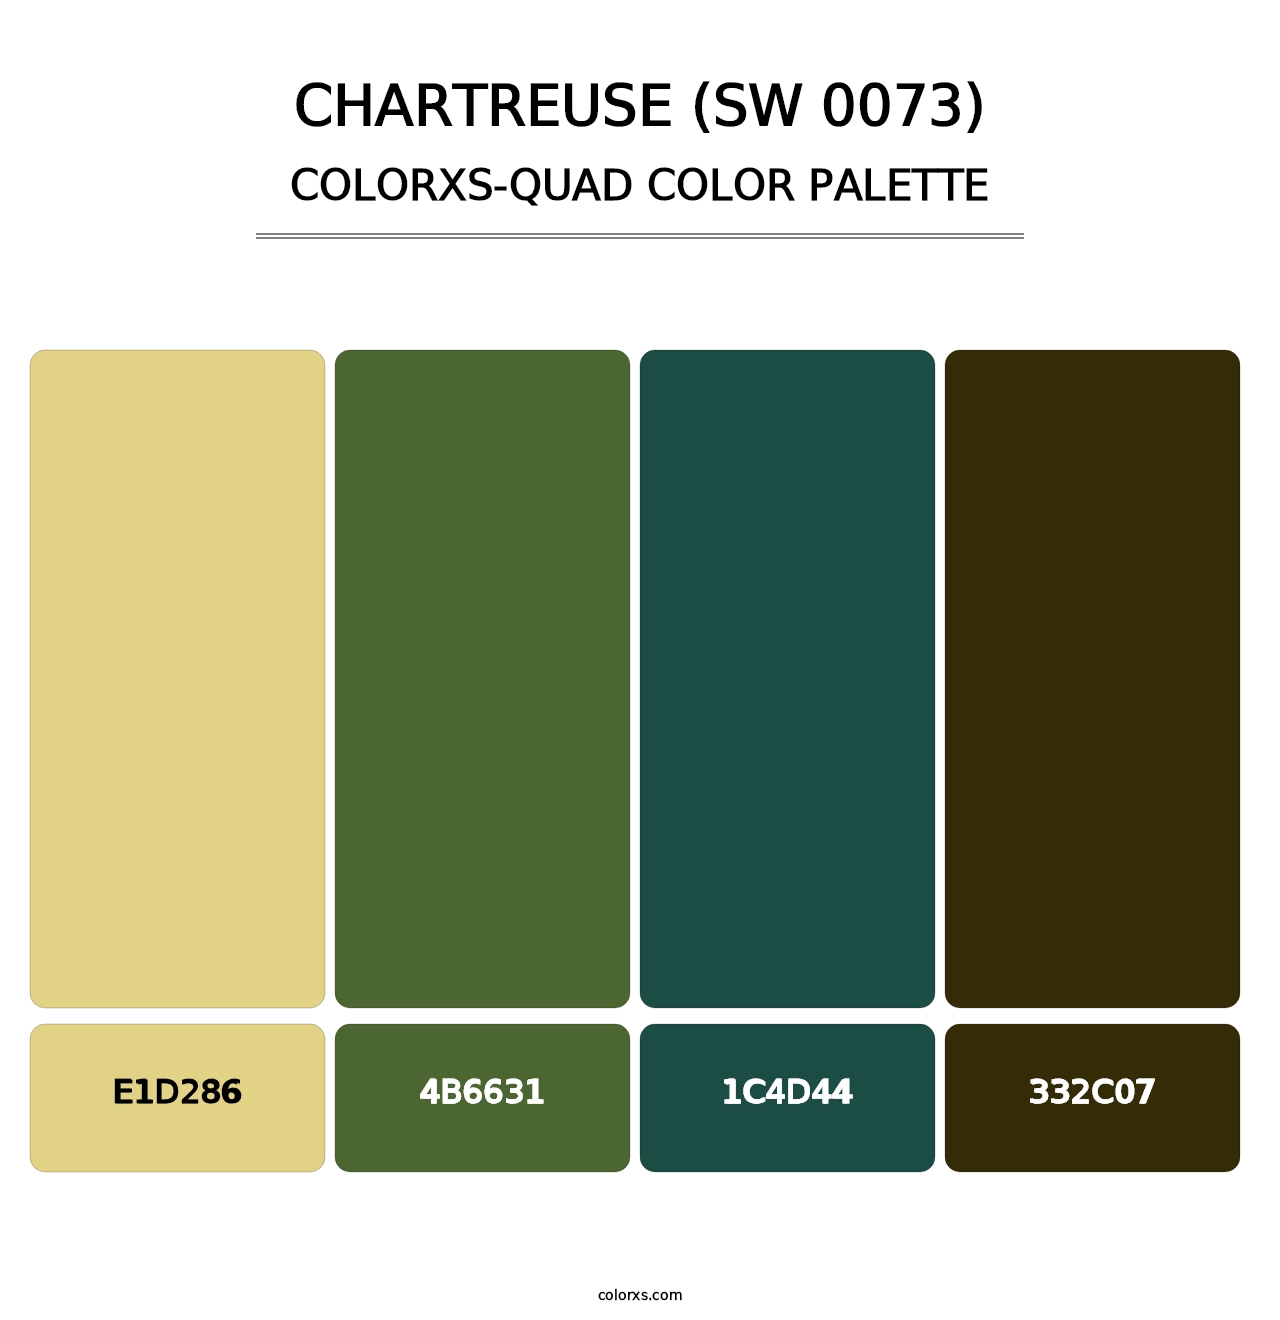 Chartreuse (SW 0073) - Colorxs Quad Palette